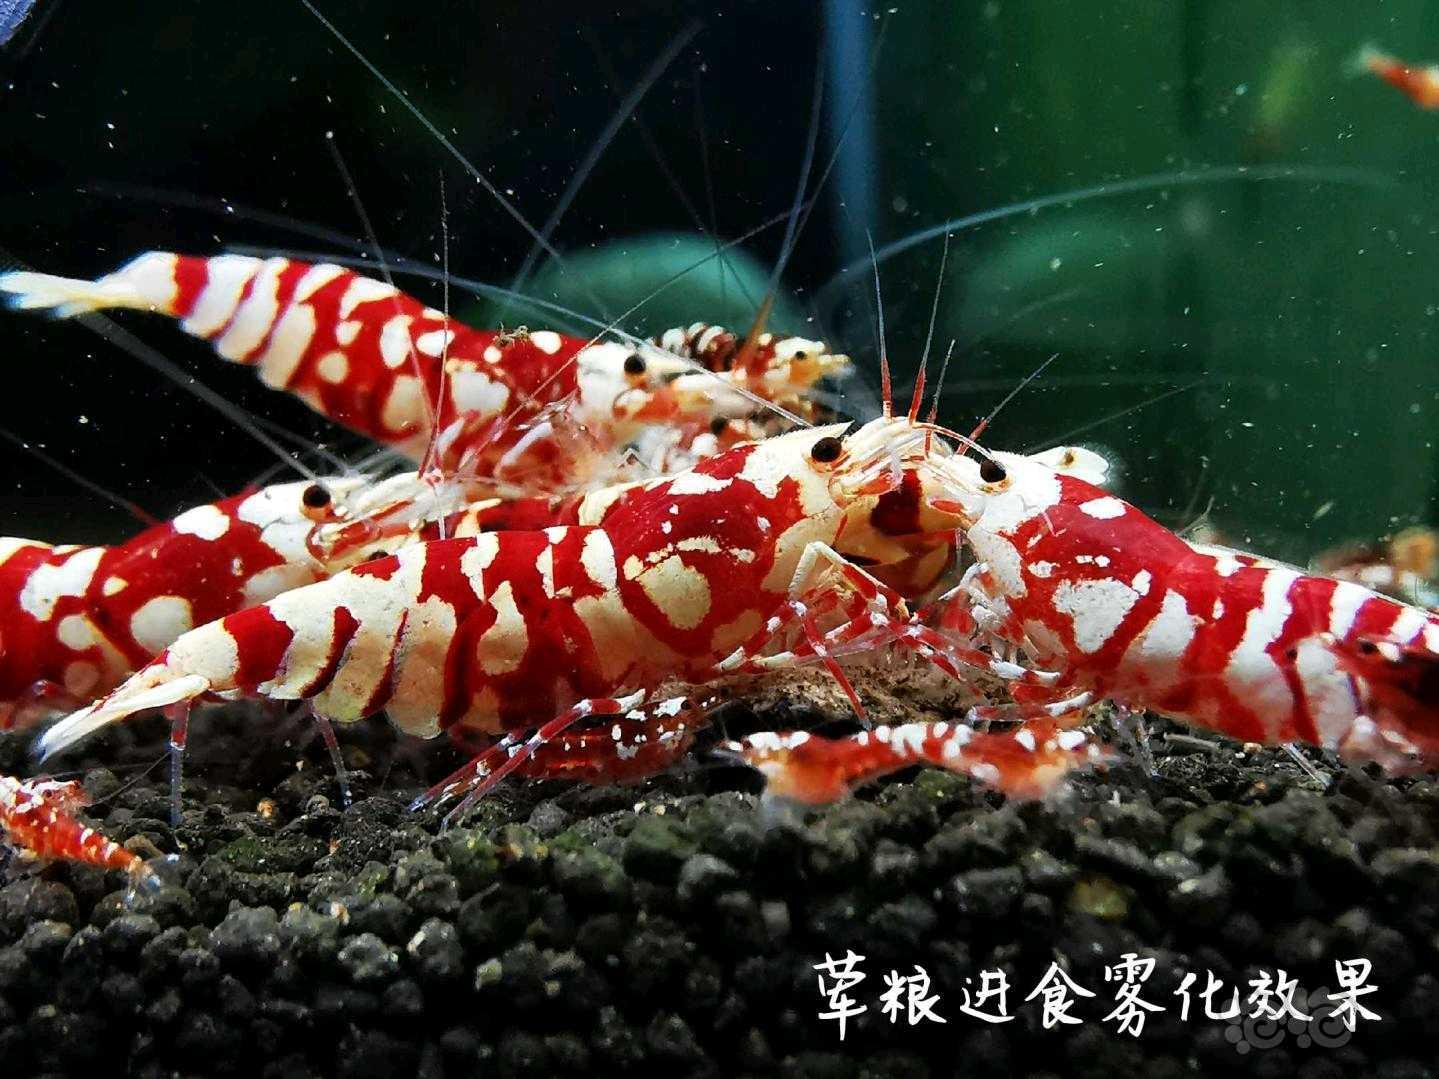 【用品】2021-04-26#RMB拍卖瑾福水晶虾饲料一套-图7